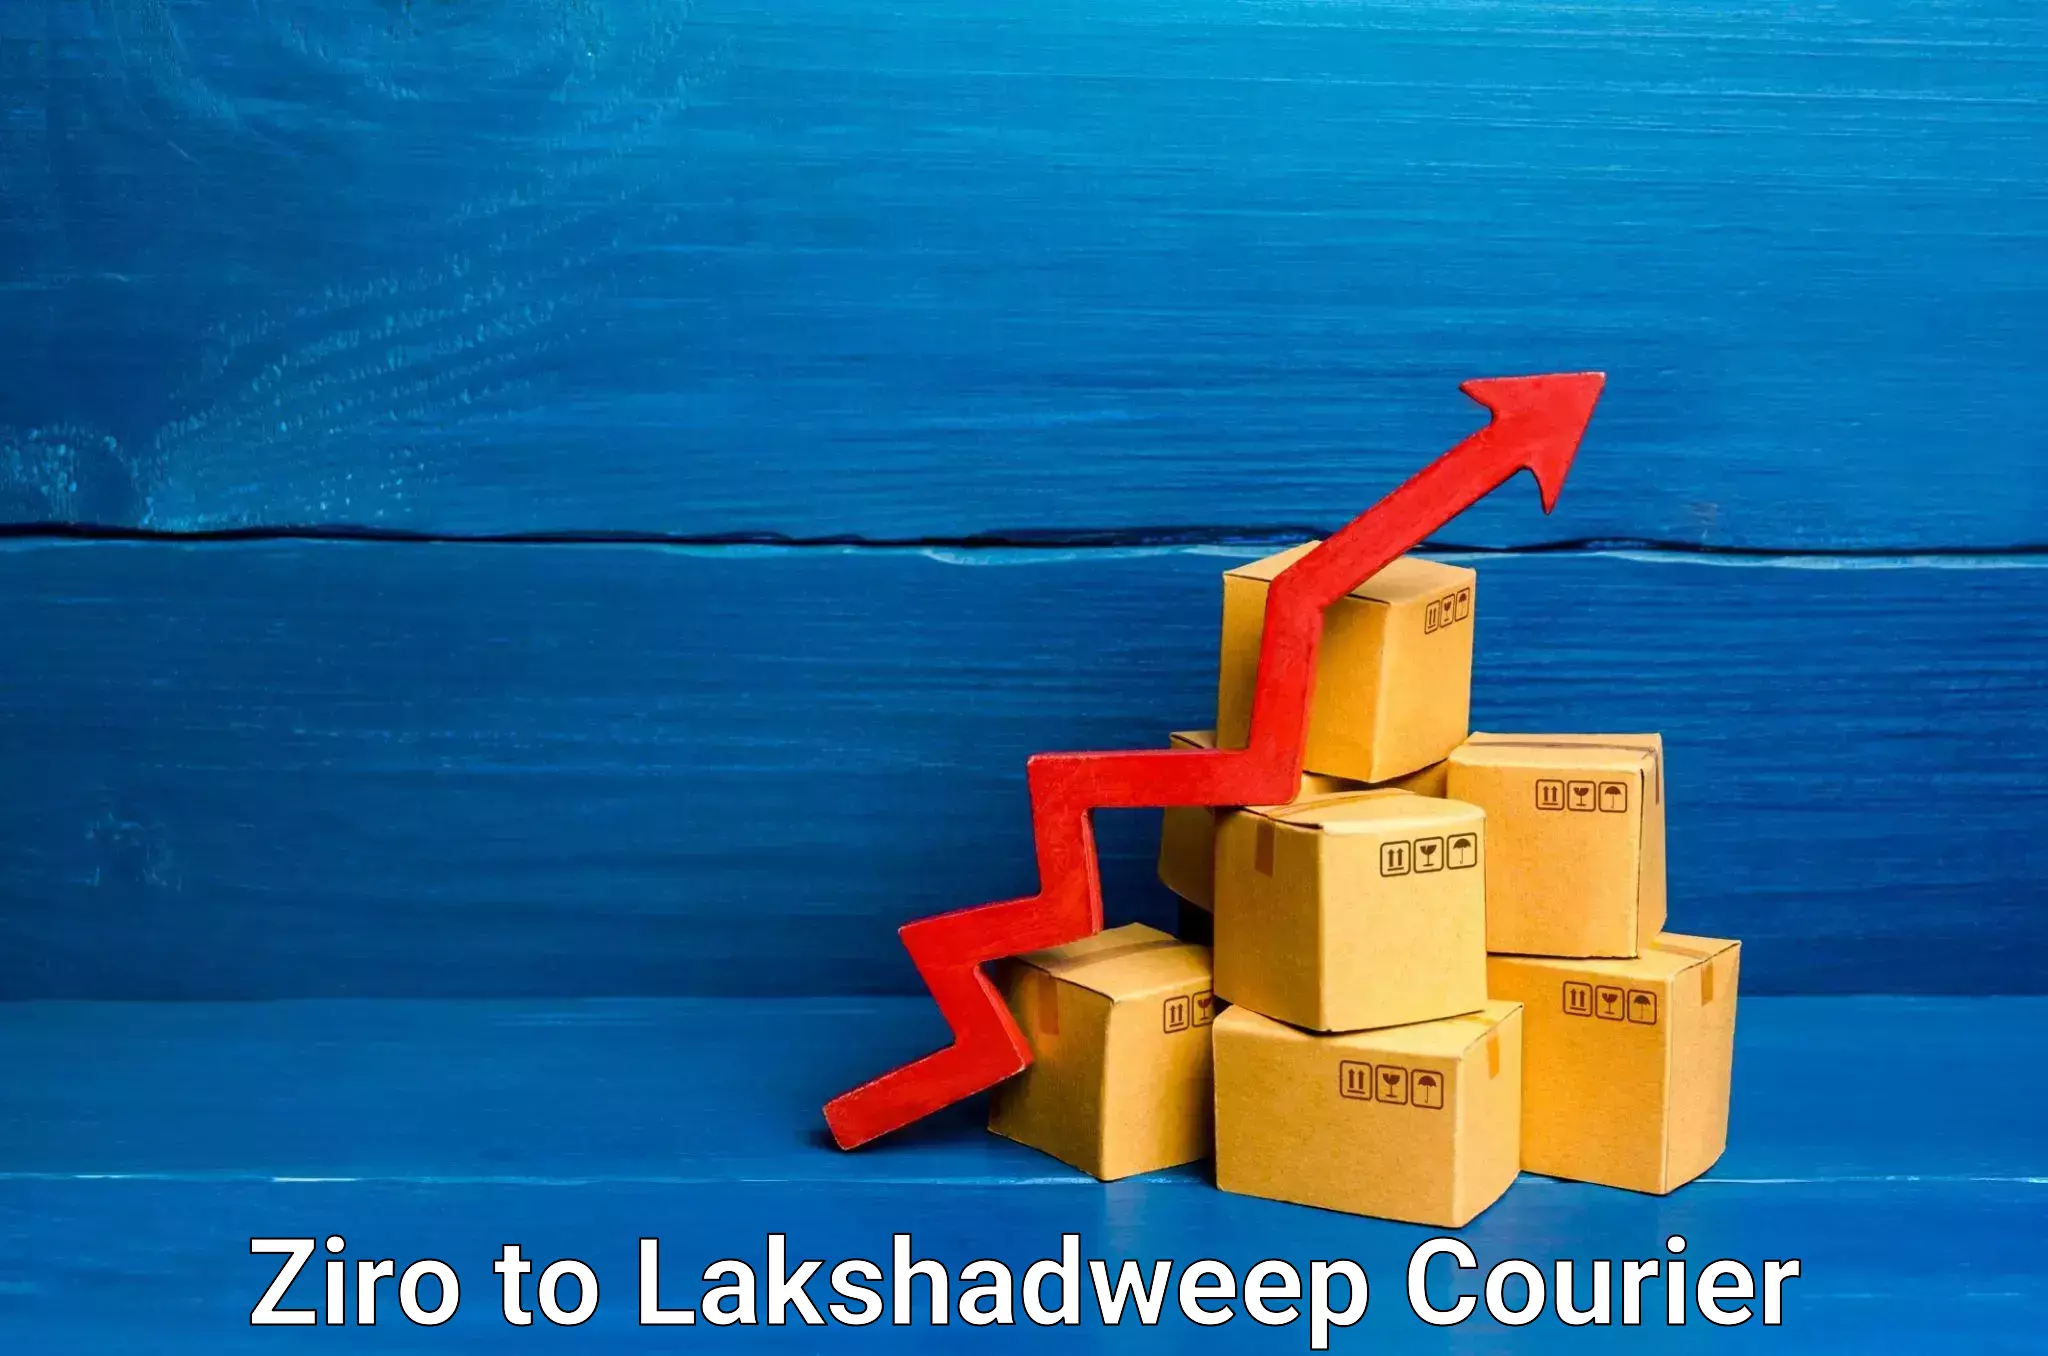 Express package handling in Ziro to Lakshadweep